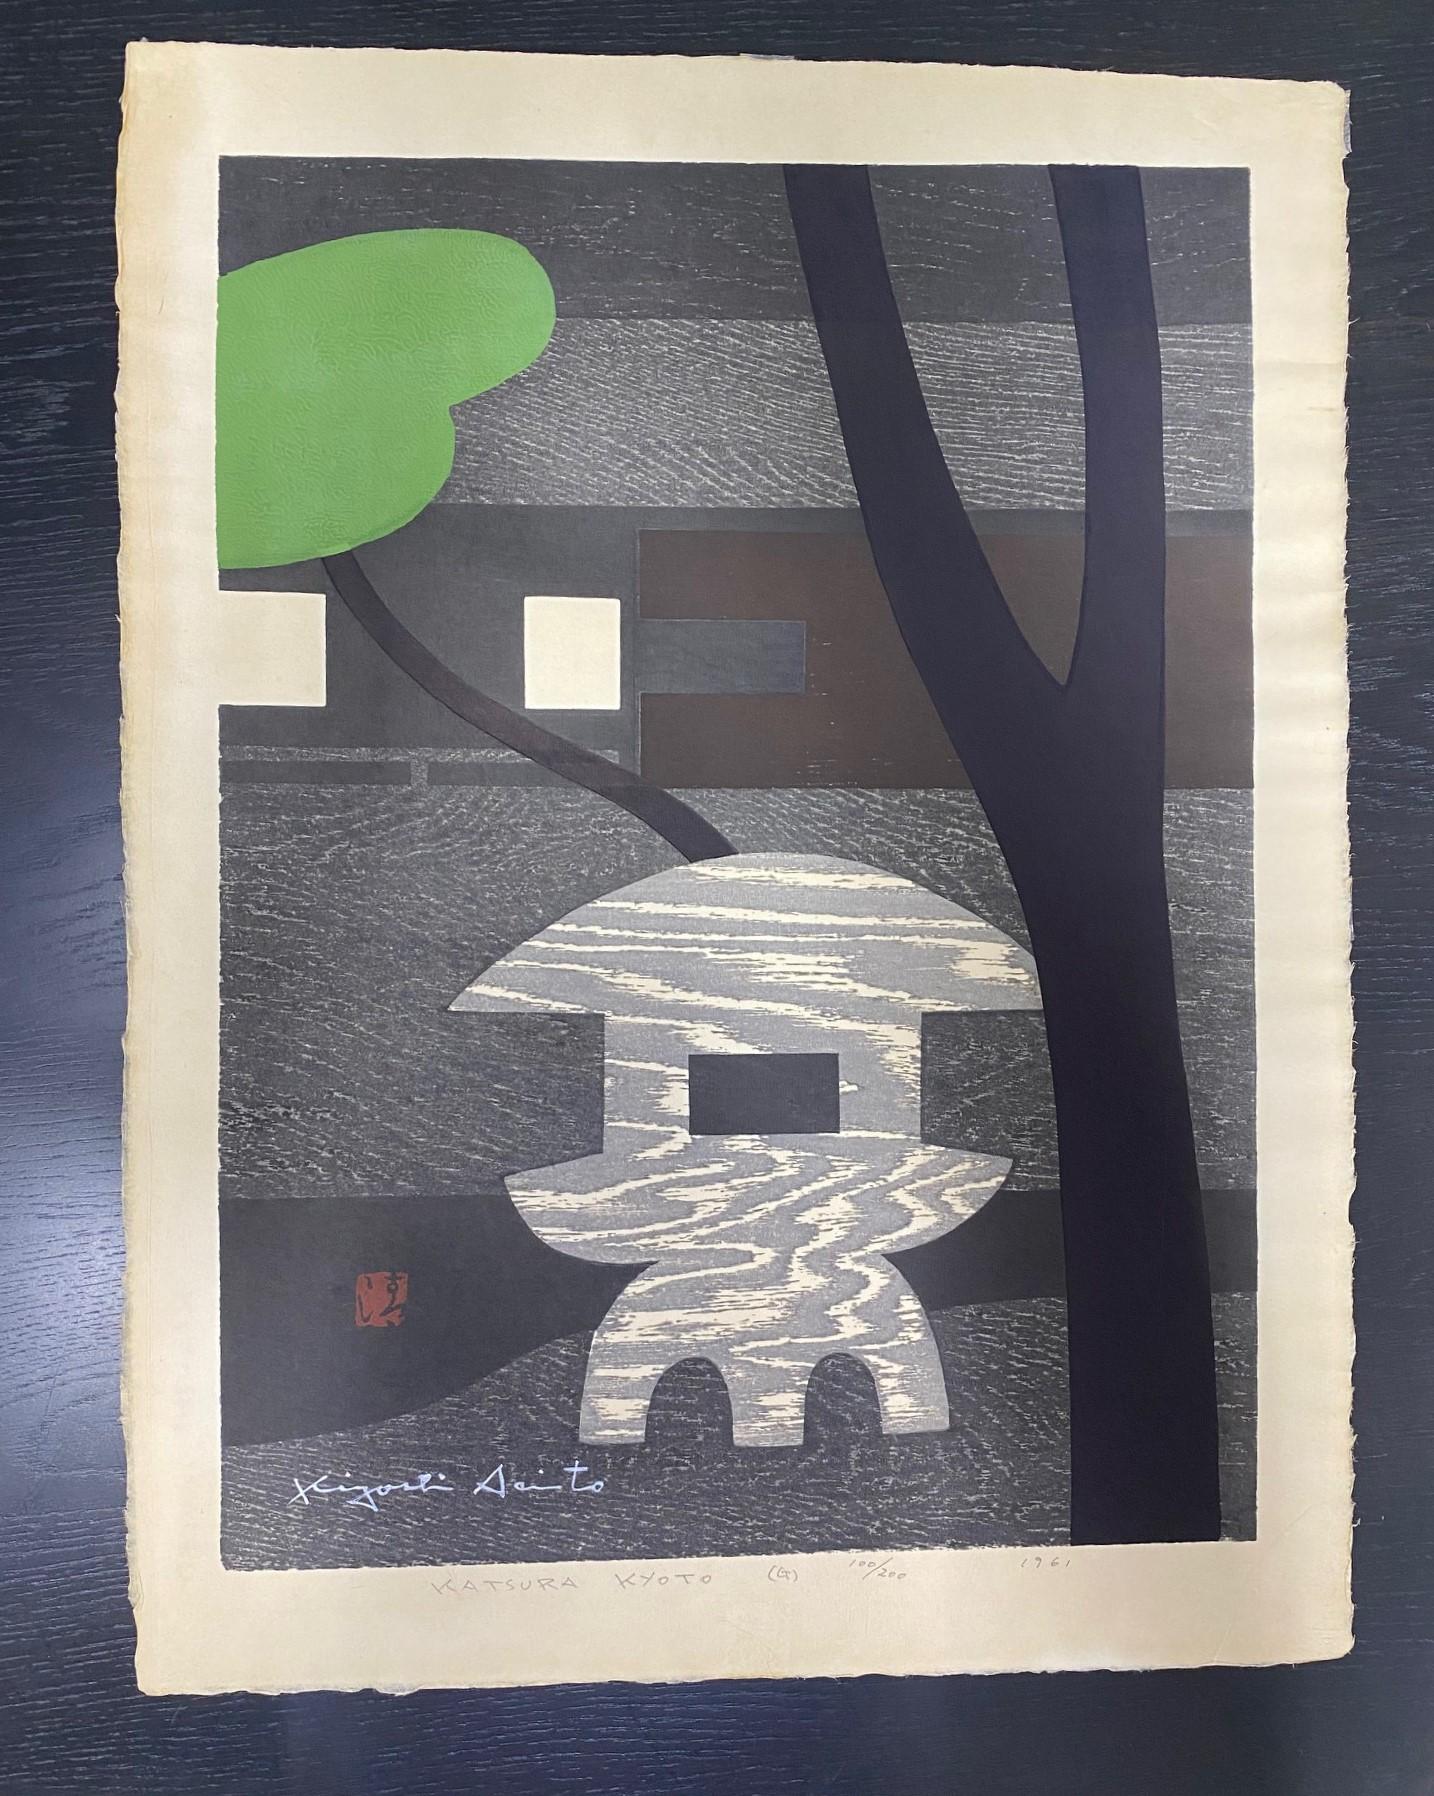 Ein wunderschön komponierter Farbholzschnitt des berühmten japanischen Grafikers Kiyoshi Saito. Viele halten Saito für einen der wichtigsten, wenn nicht den wichtigsten zeitgenössischen japanischen Grafiker des 20. Dieser Druck mit dem Titel